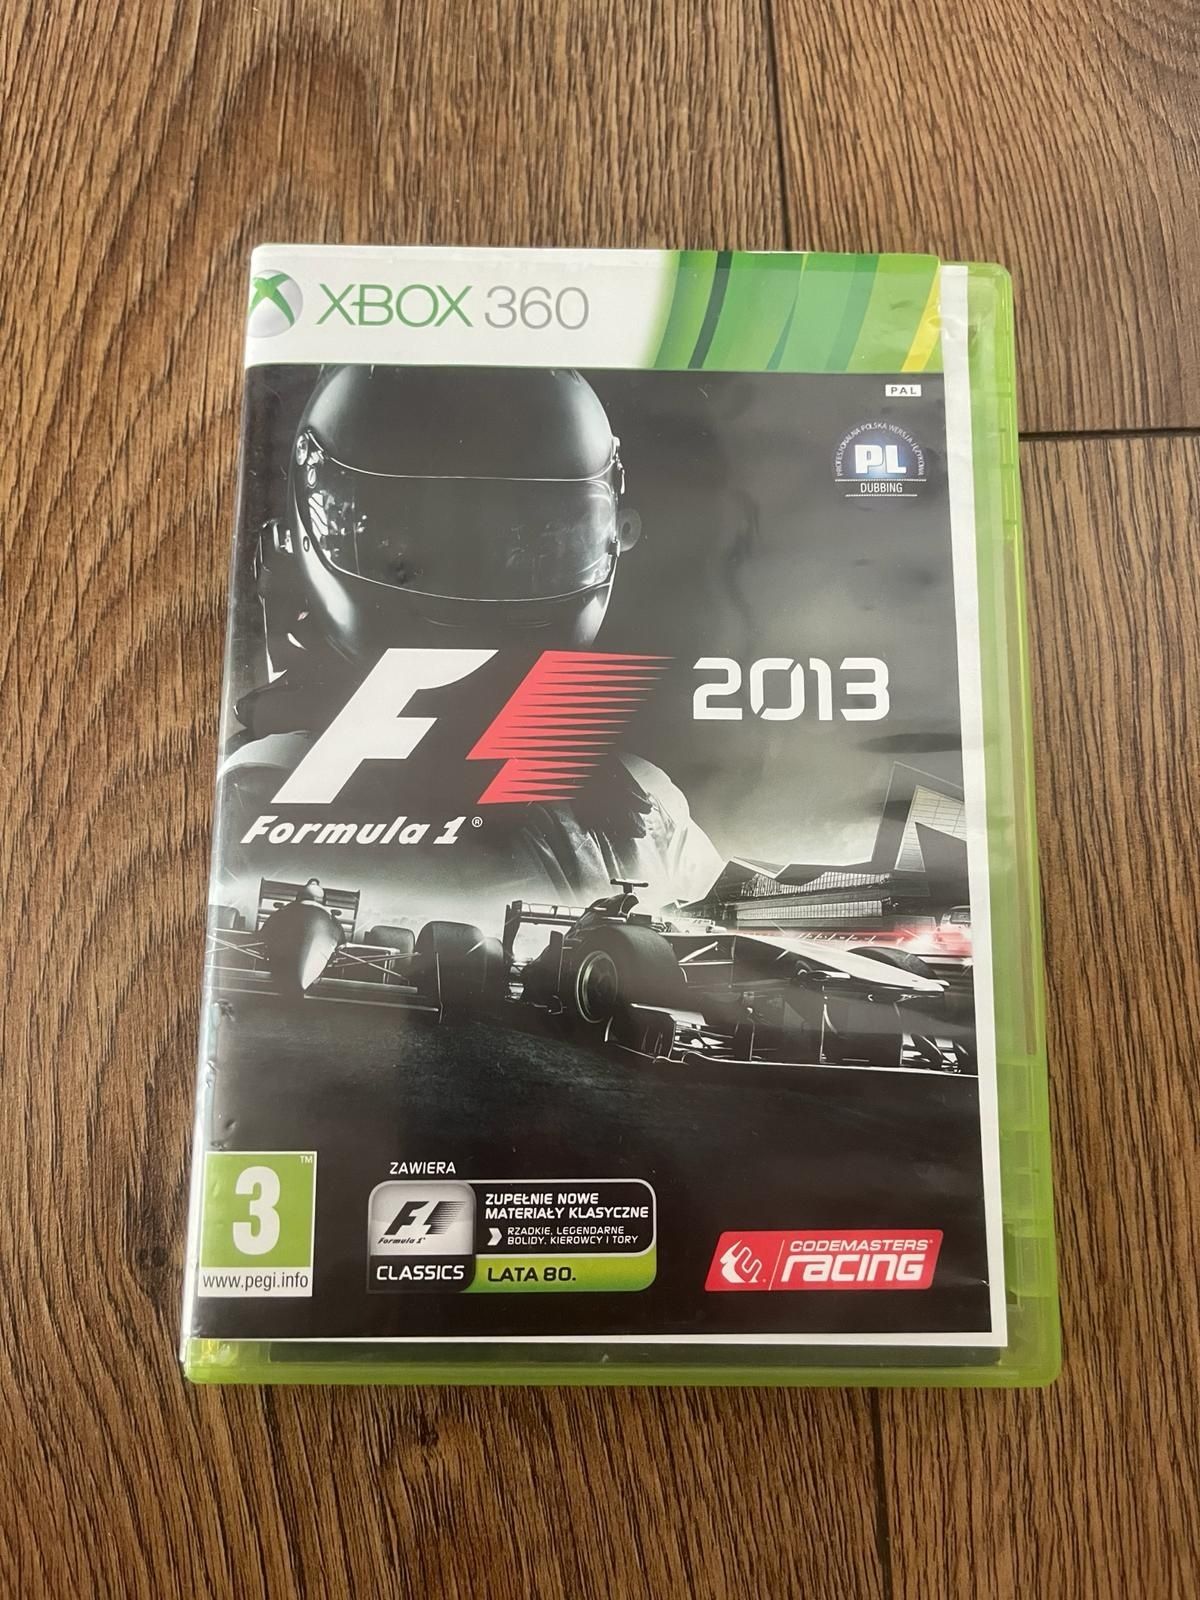 F1 formuła Xbox 360